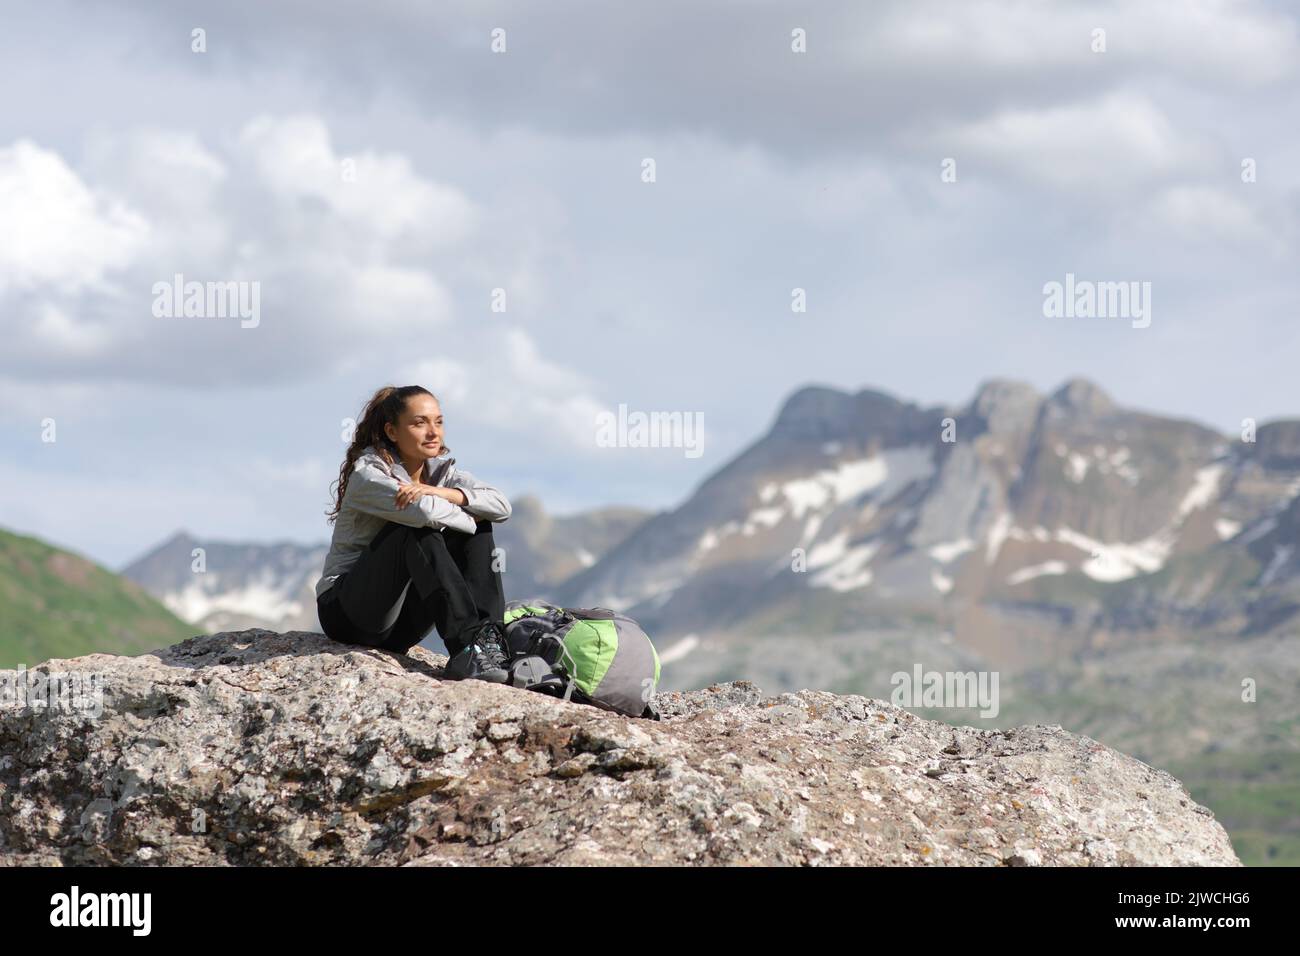 Excursionista en la cima de una montaña contemplando vistas sentado en una roca Foto de stock